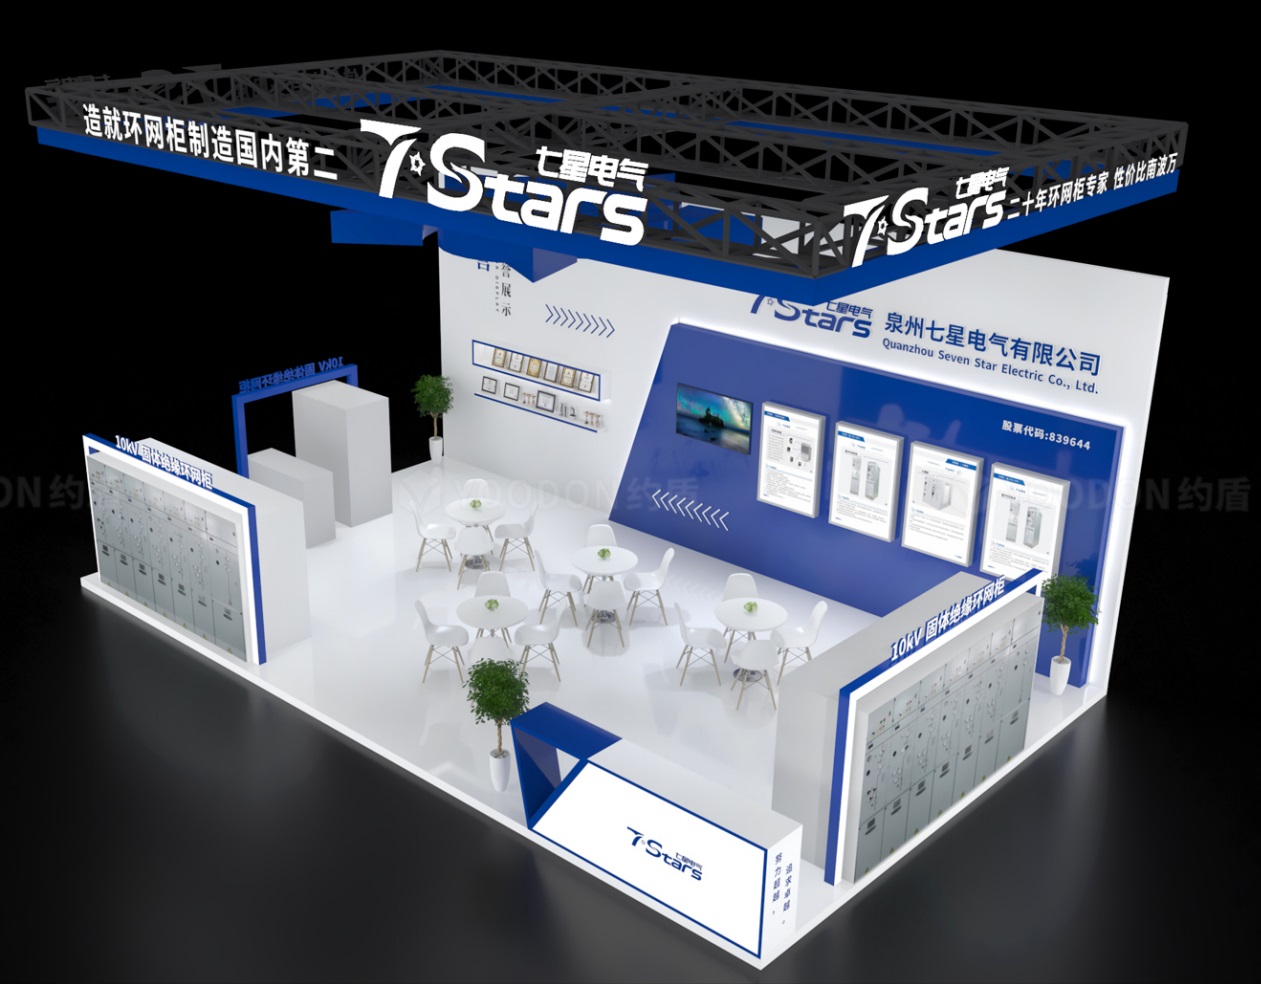 泉州七星電気は上海EP電力展示会に出展し、最新製品である水没リングメインキャビネットと小型ローキャビネットを展示しました。